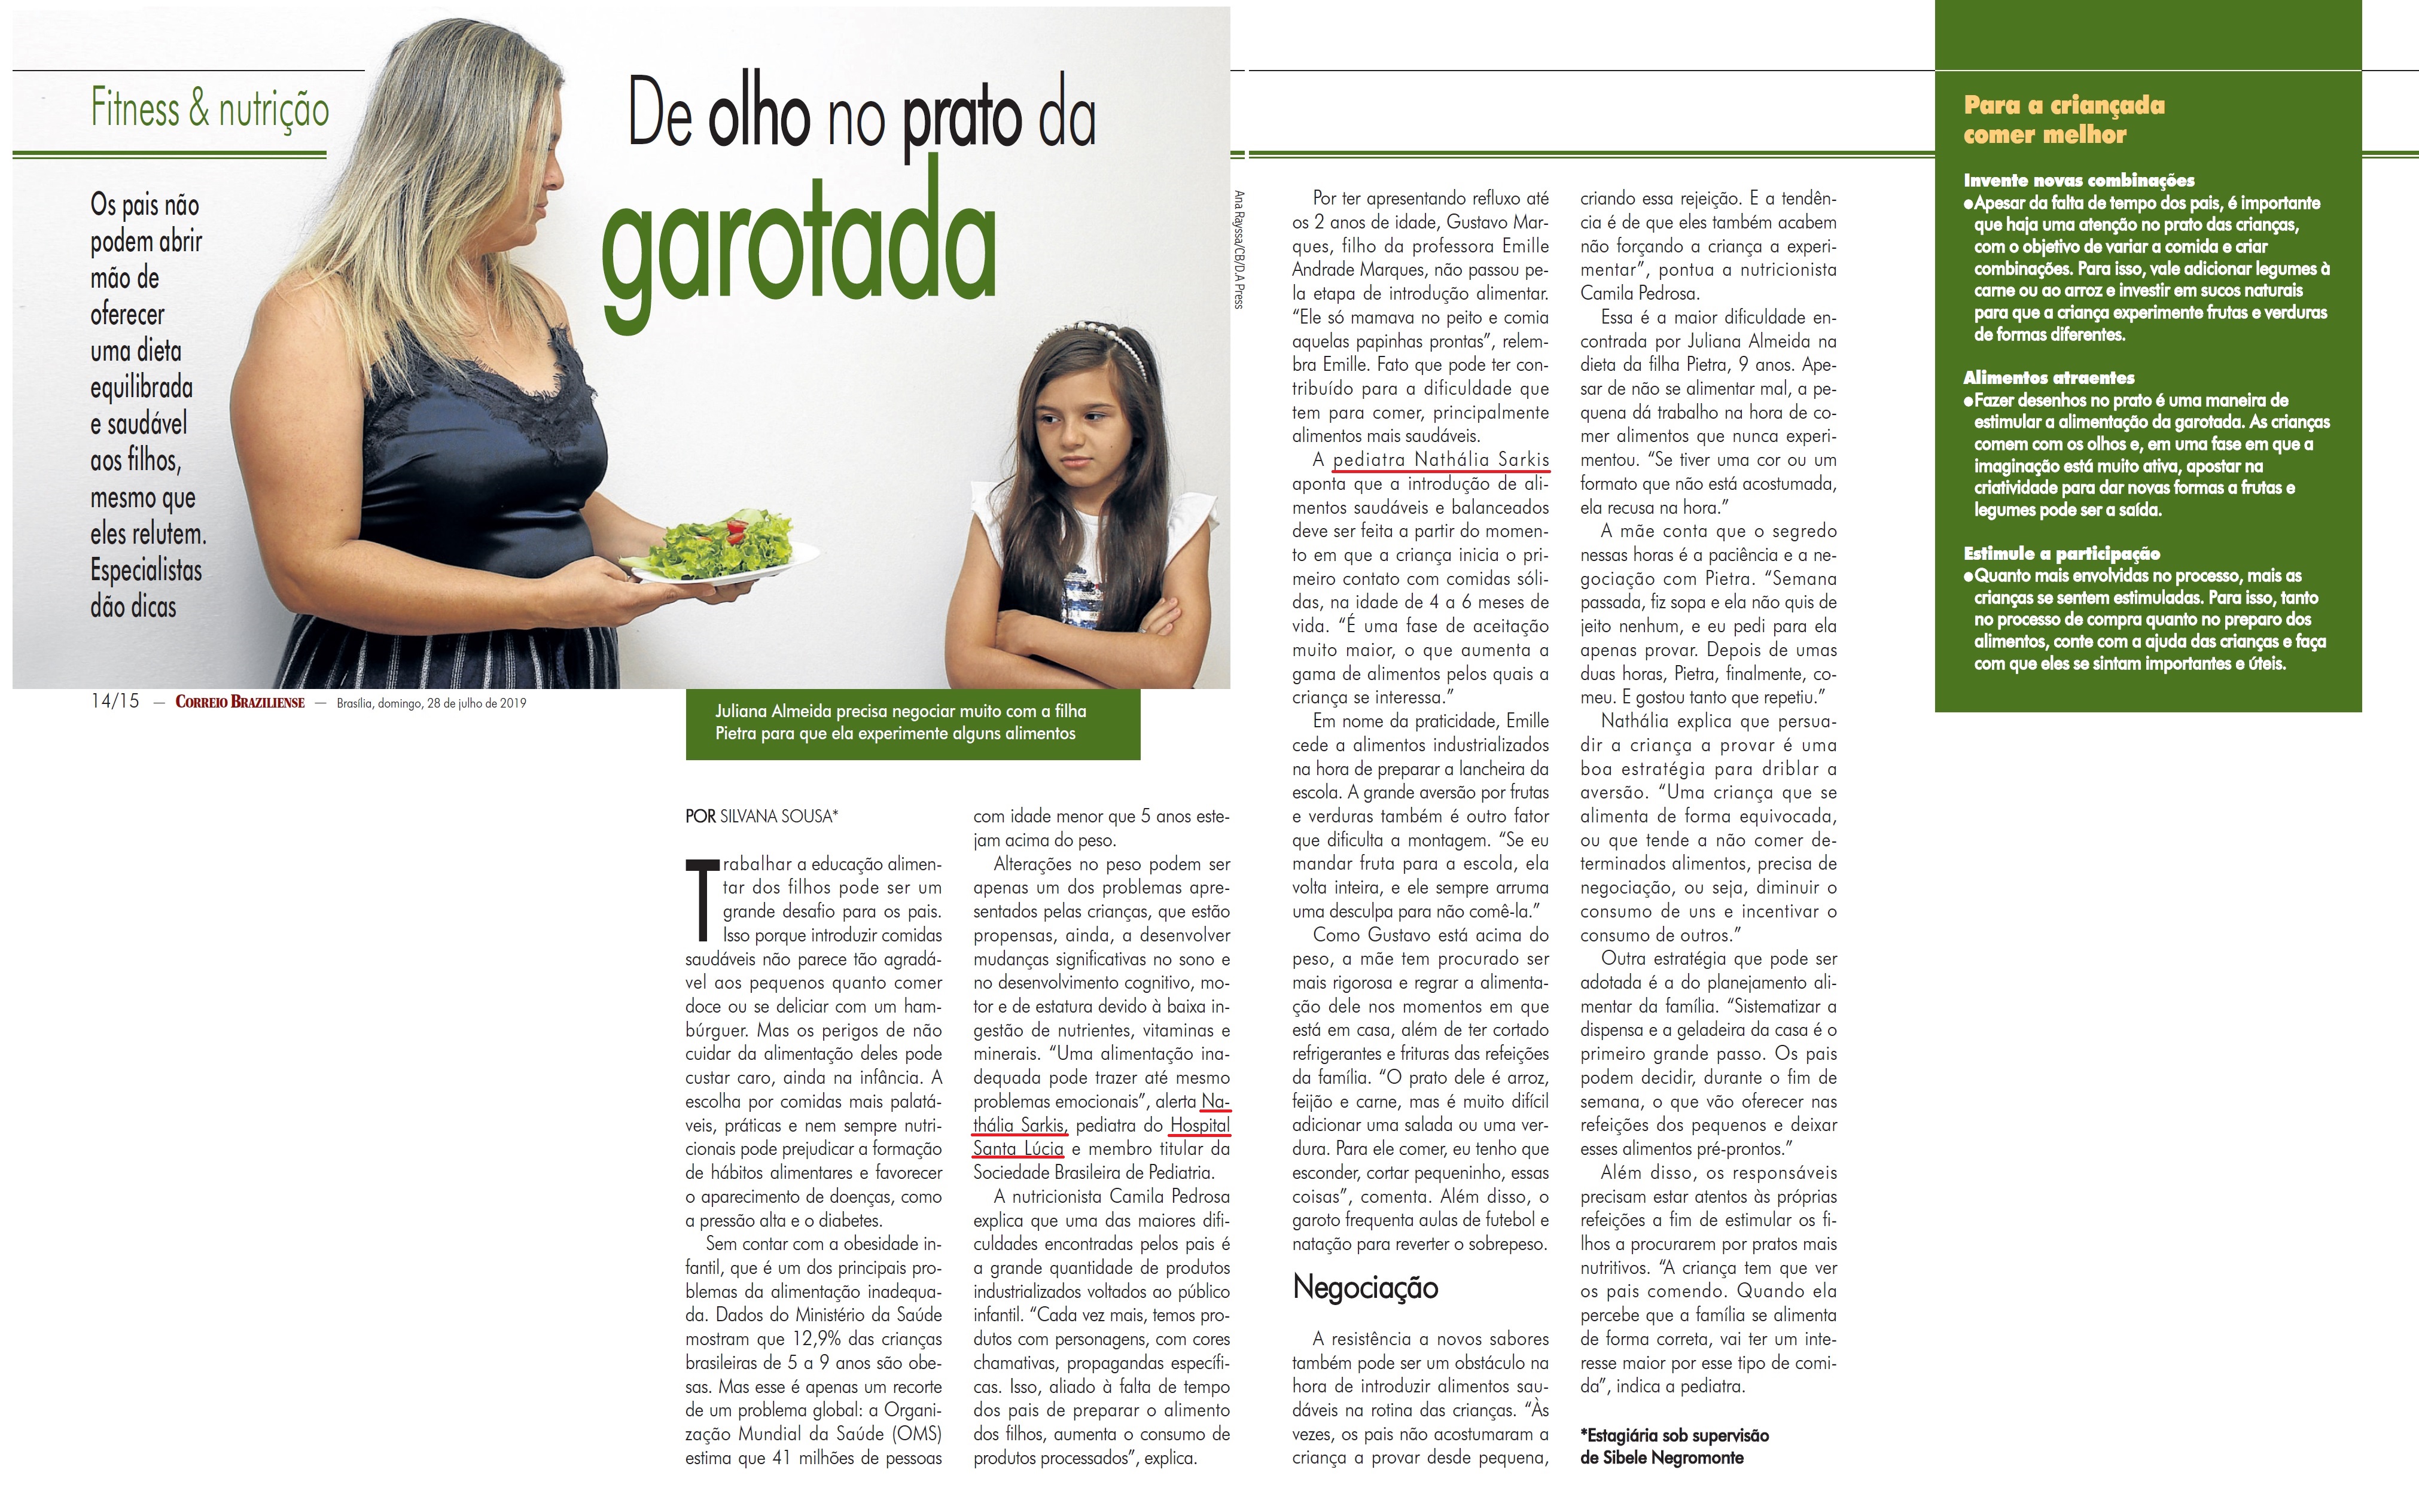 Revista do Correio - Dra. Nathália Sarkis HSLS - 29-07-2019